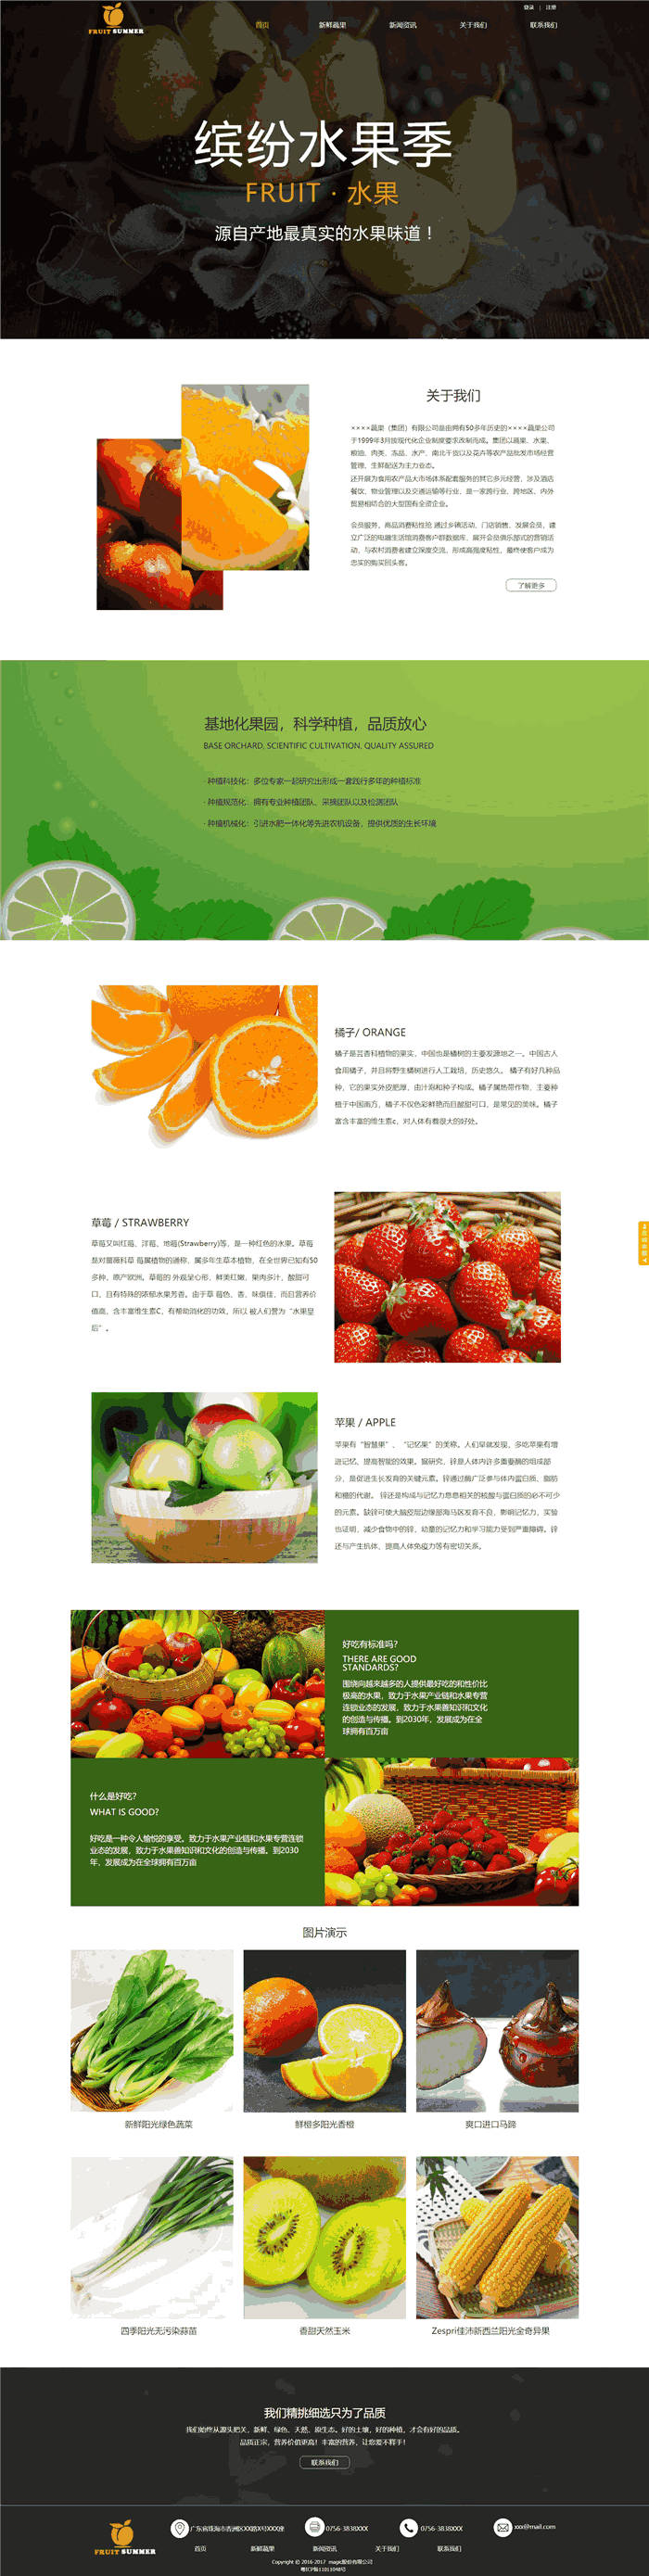 响应式食品饮料水果网站WordPress主题演示图